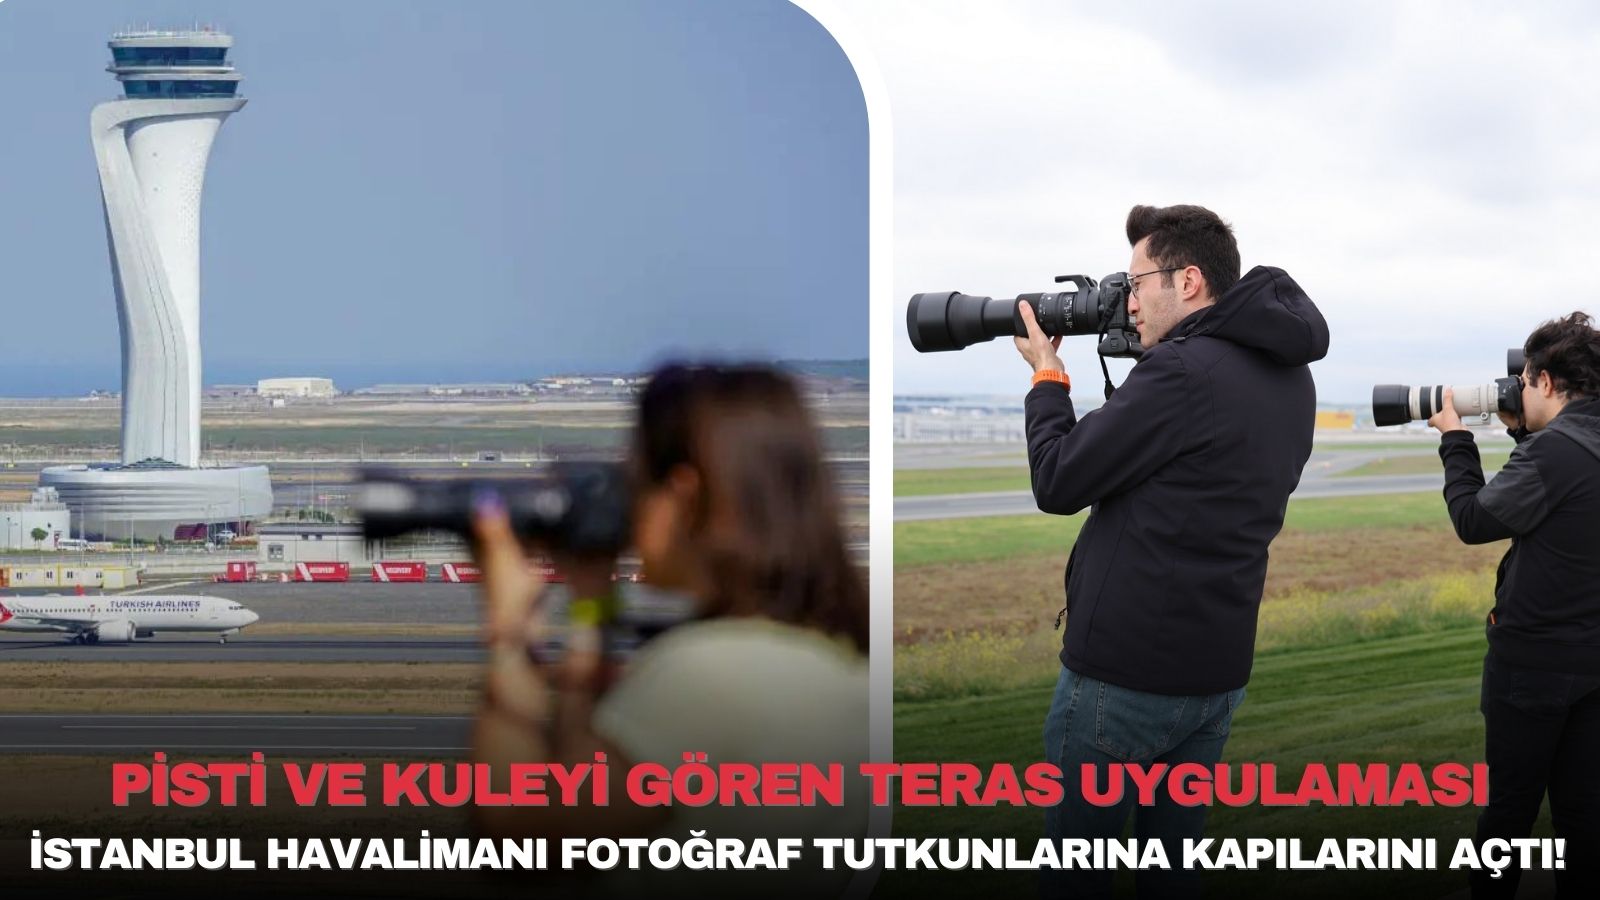 istanbul-havalimani-fotograf-tutkunlarina-kapilarini-acti